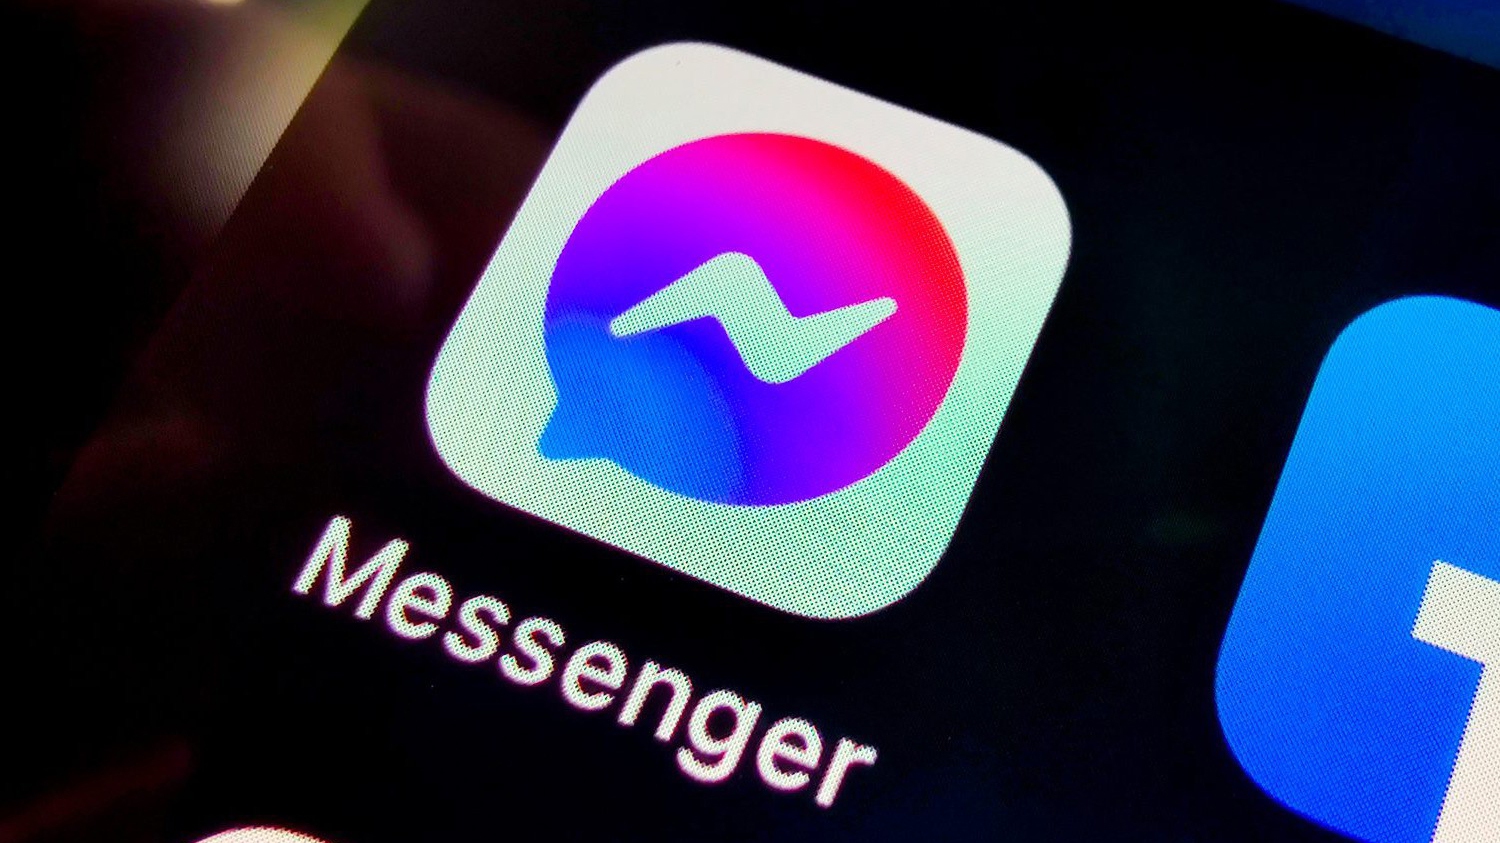 Nóng: Messenger gặp lỗi nghiêm trọng, toàn bộ ảnh; video và link đã gửi đồng loạt biến mất